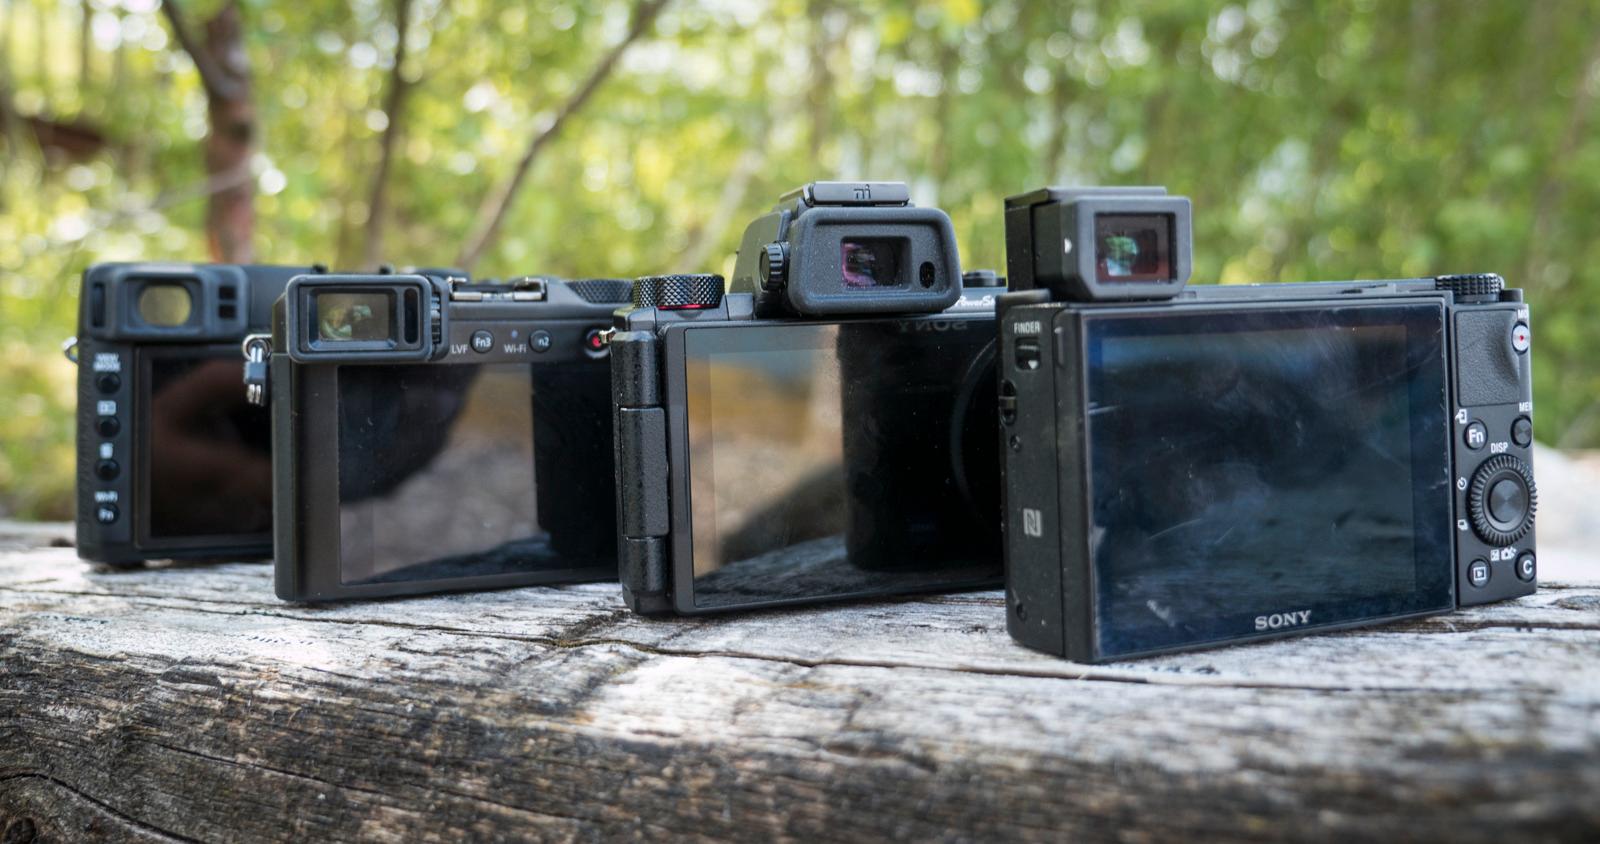 Fra venstre: X00T og LX100 har en søker med flat profil, mens søkeren på Canon G5 X stikker opp som et tradisjonelt prismehus. Sony RX100 IV er utstyrt med en snerten sprett-opp-søker som kan forsvinne ned i kamerakroppen når den ikke brukes.